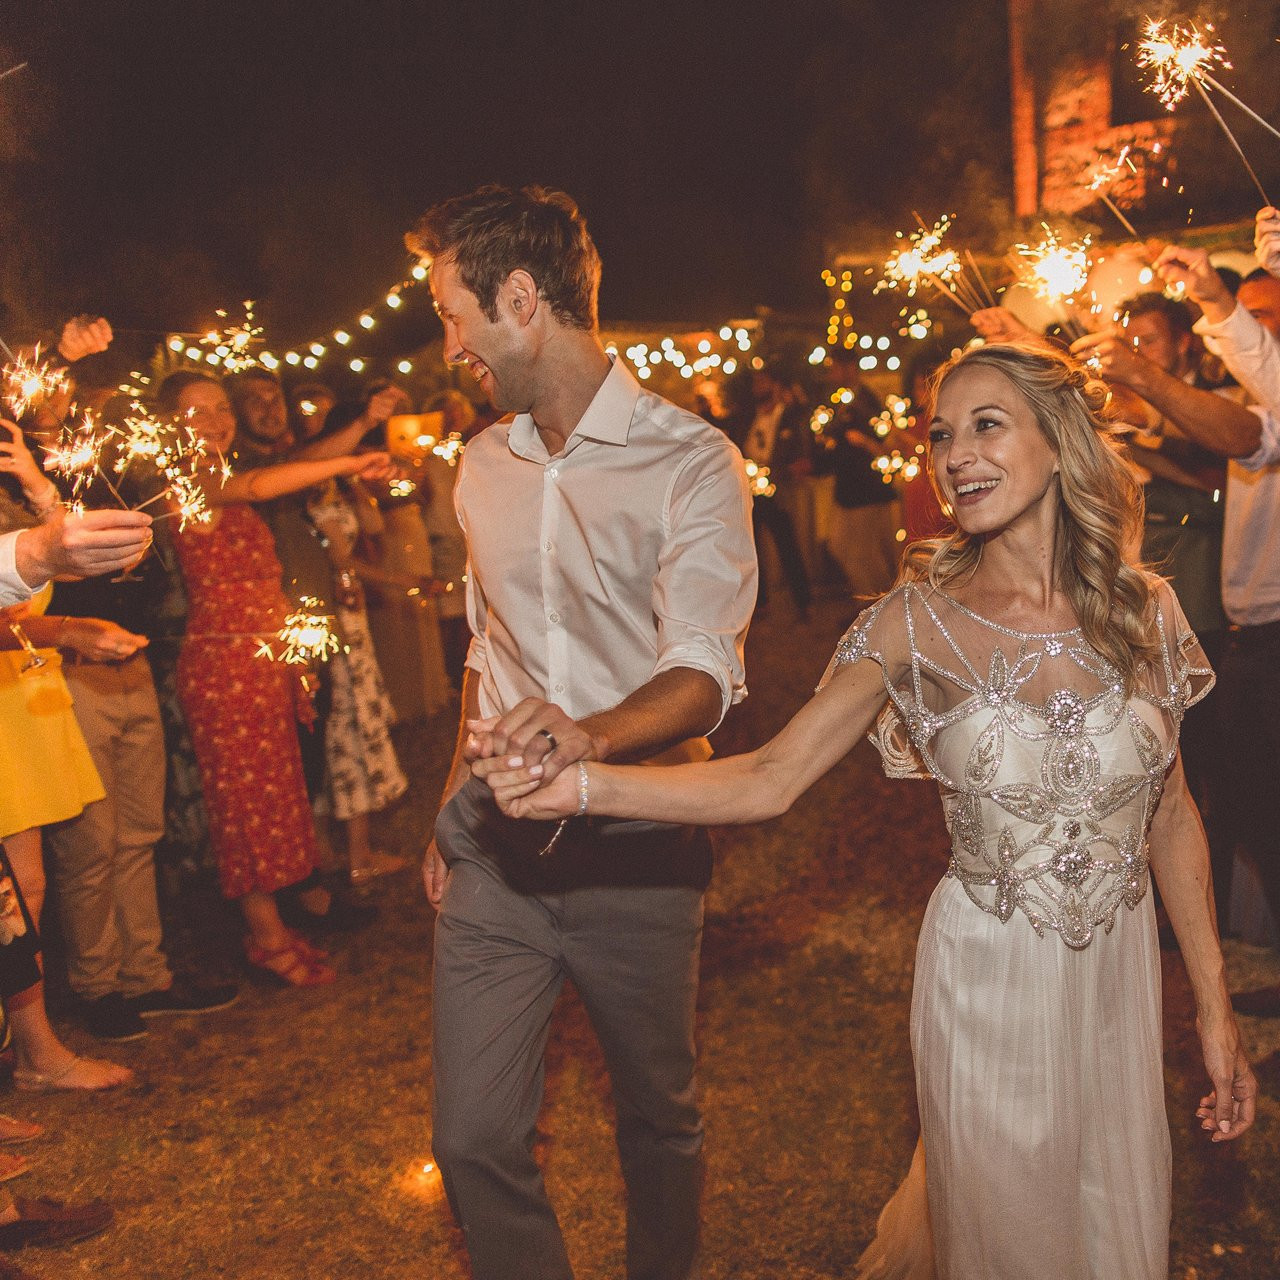 Big Sparklers For Wedding
 Wedding Sparklers & Giant Send f Sparklers